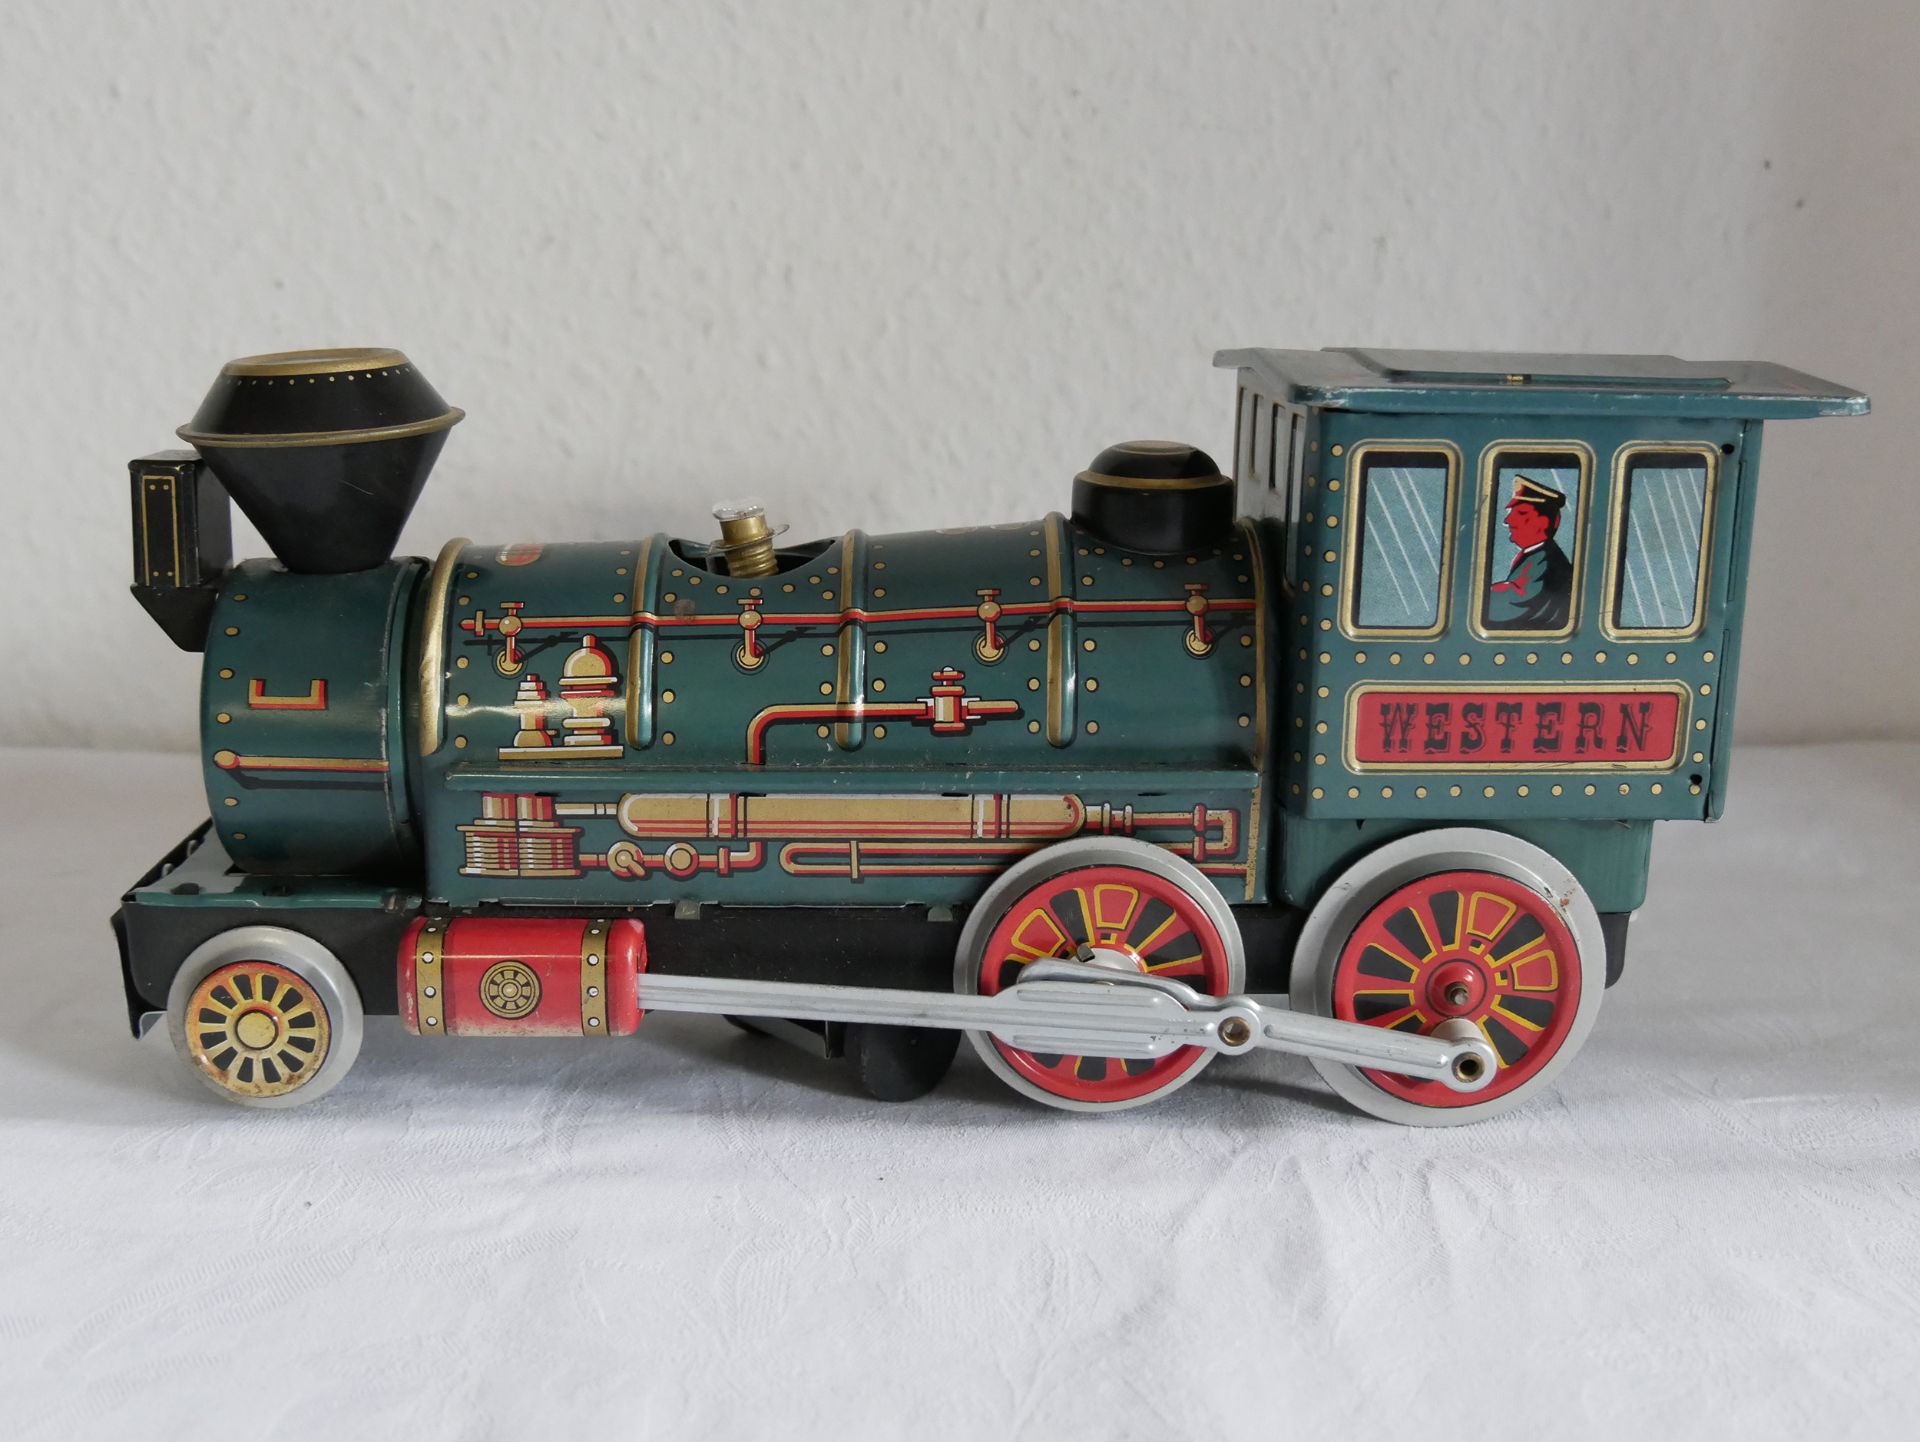 Alte batteriebetriebene Lokomotive Spielzeug Japan. Patent Nr. 557116,701170,24962. Rammschutz sowie